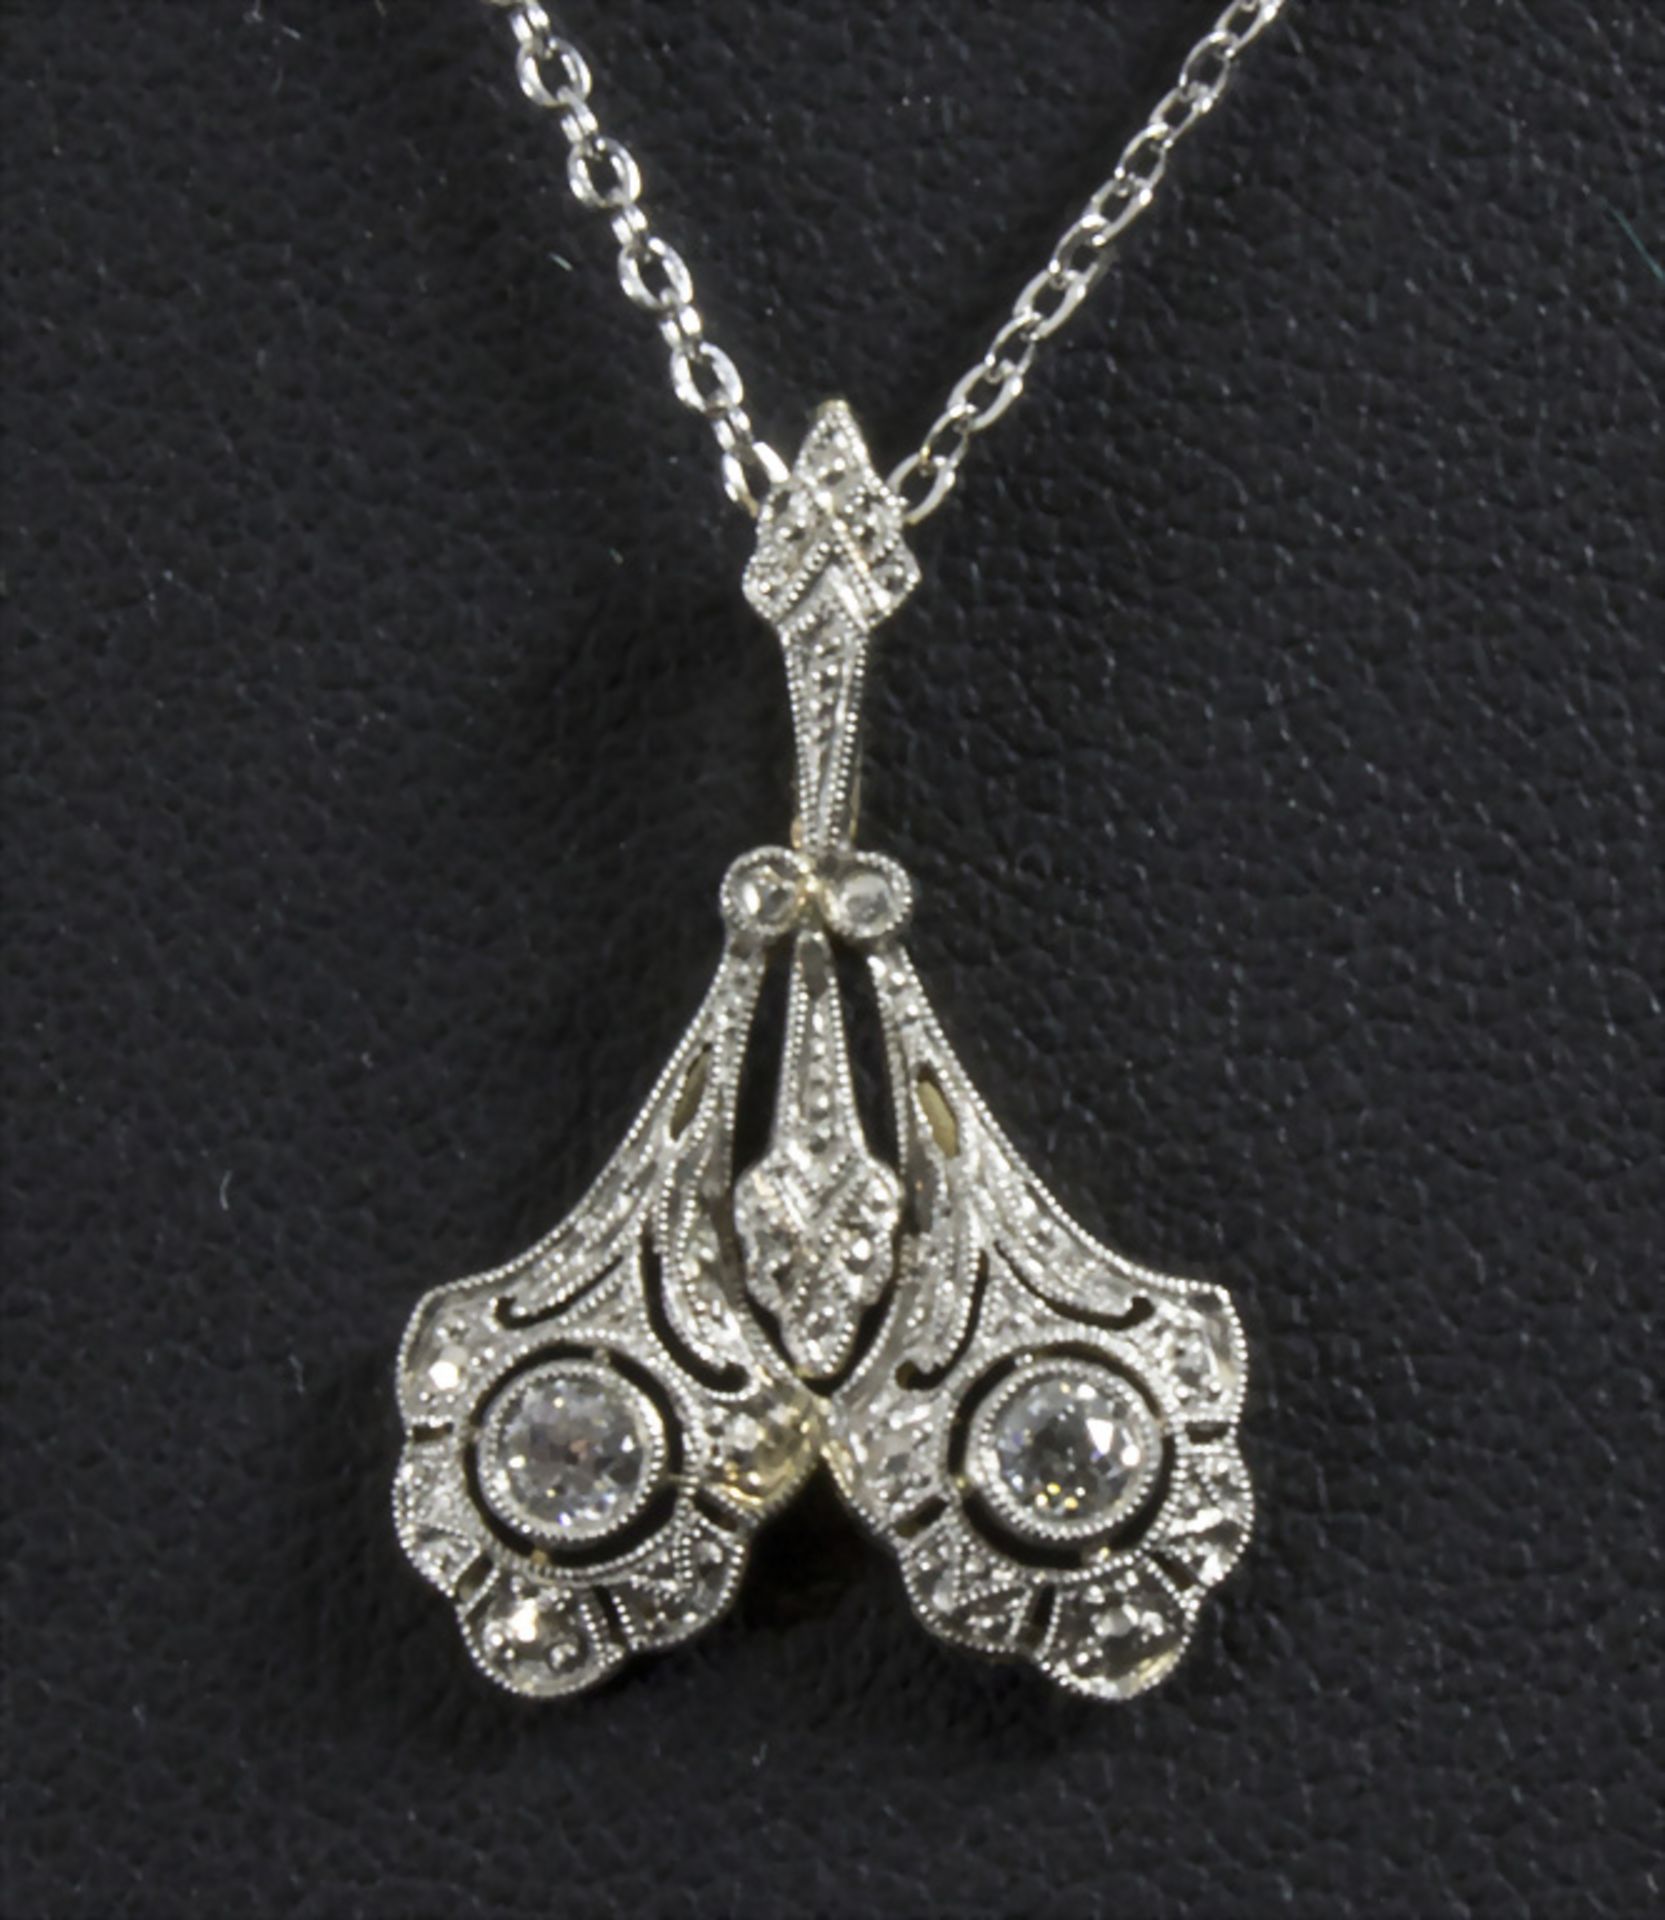 Jugendstil Collier / An Art Nouveau silver necklace 14ct gold pendant with diamonds